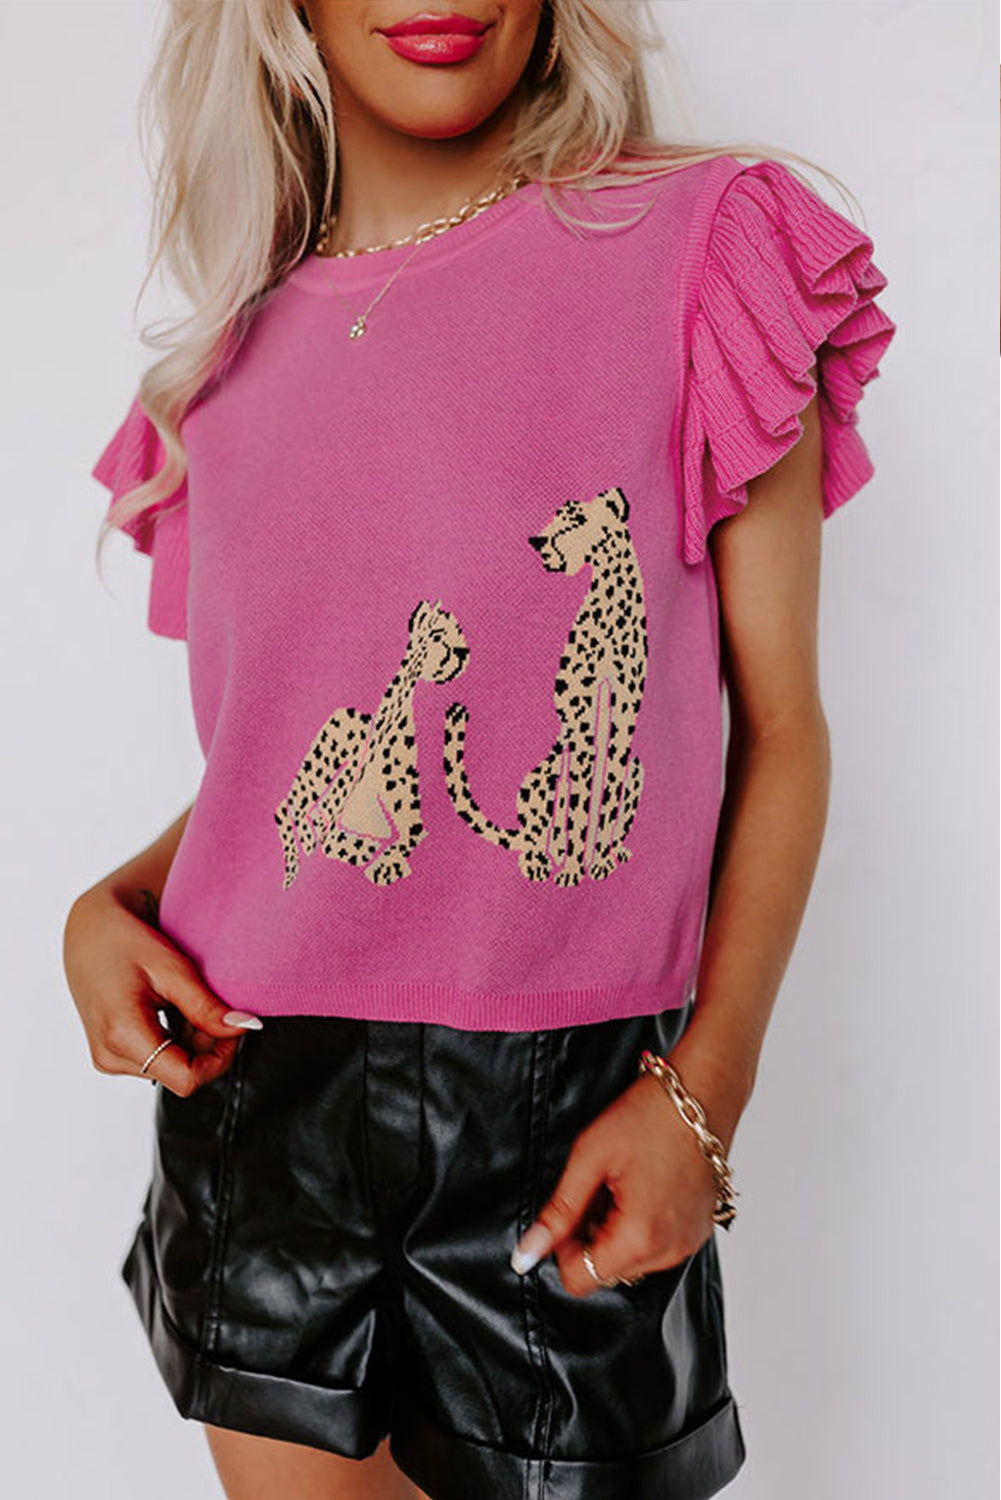 Leopard Pattern Woolen Vest Women Summer Women Clothing Simple Ruffle Sleeve Knitted Top